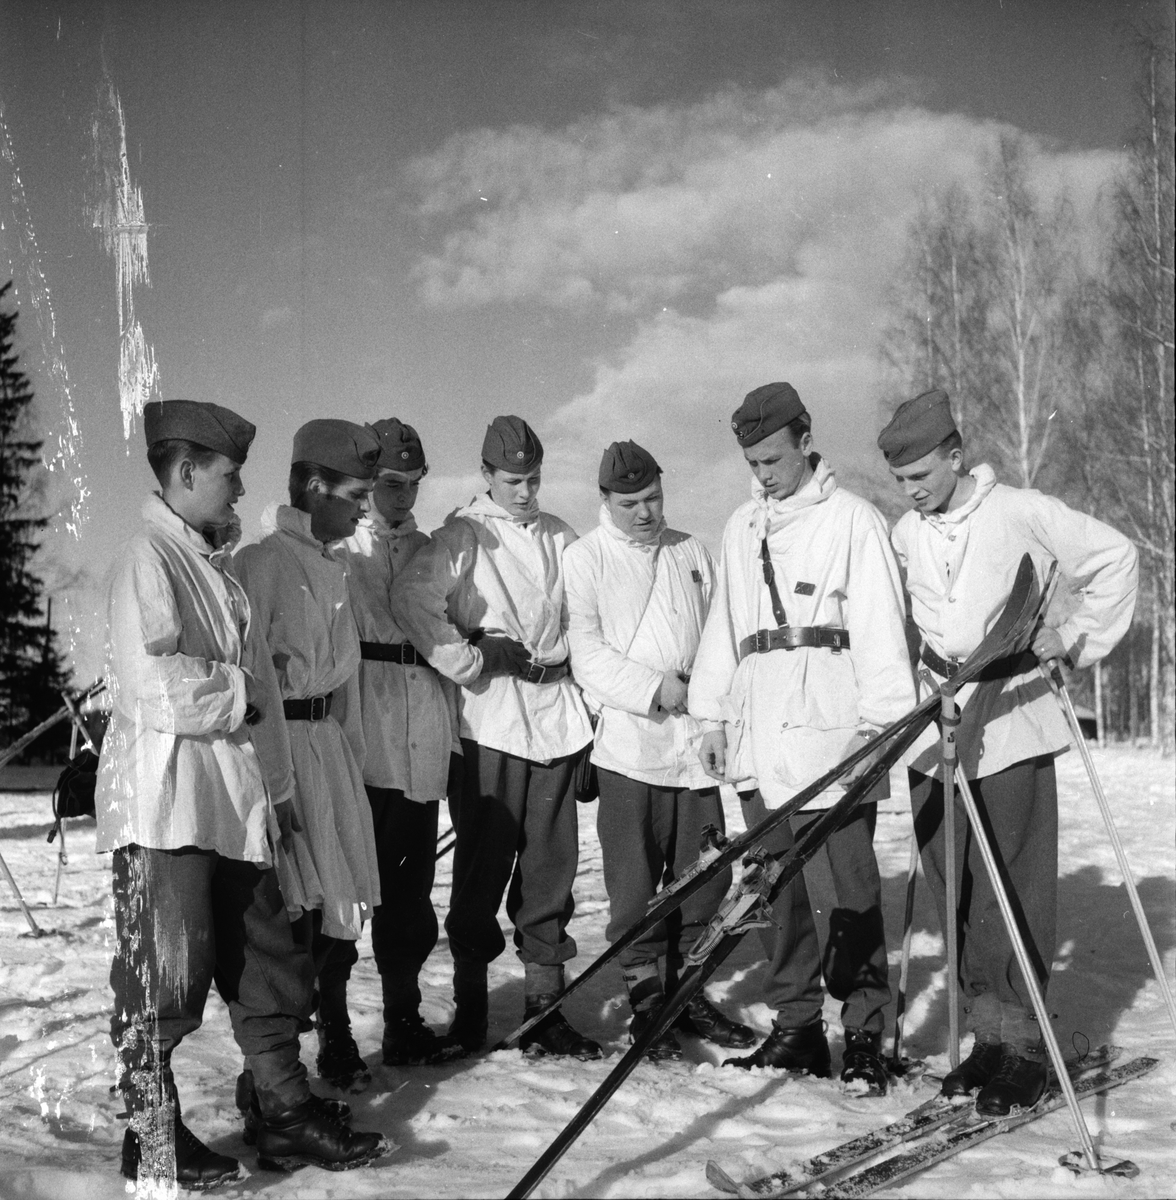 FBU-läger Stagården
Februari 1959